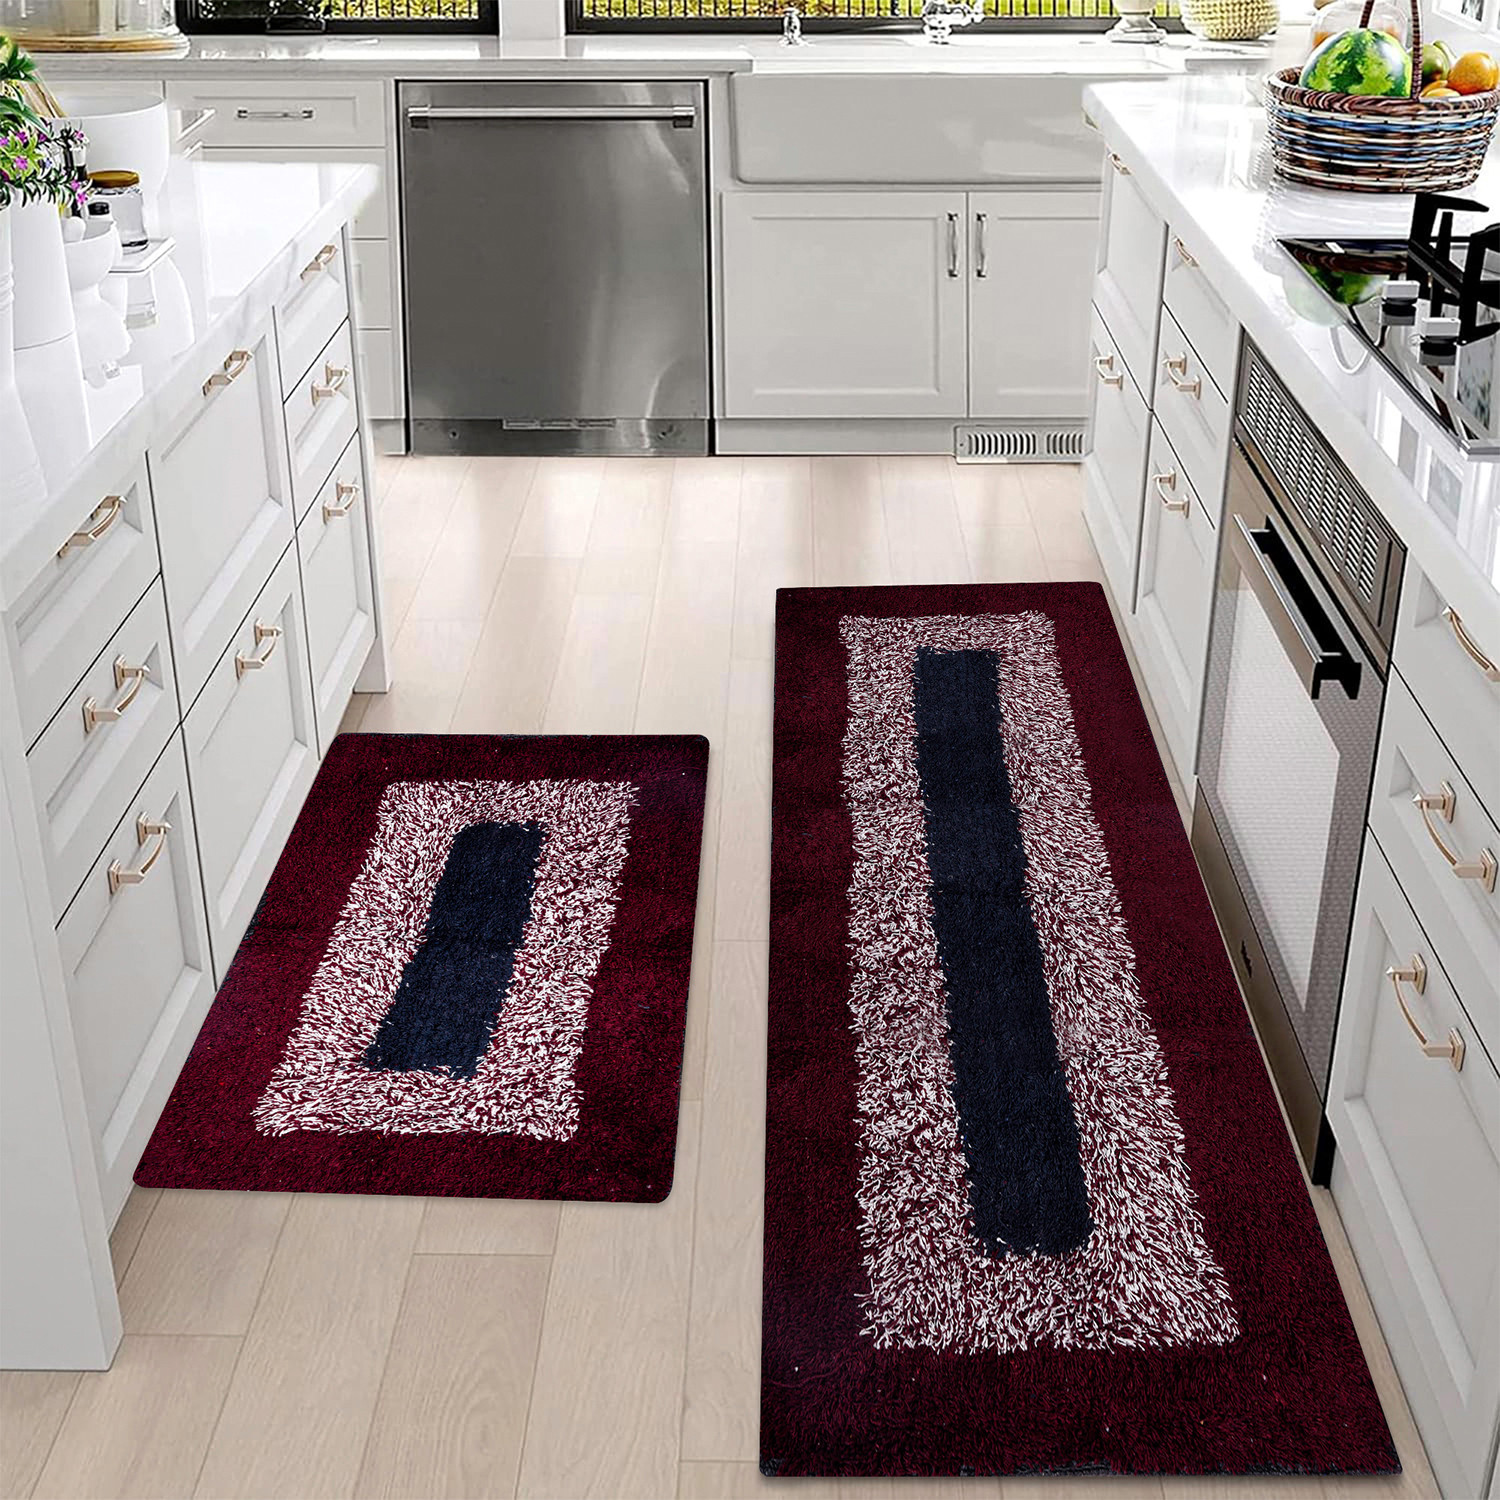 Kuber Industries Kitchen Set | Luxury Kitchen Floor Door Mat Runner Set | Doormat for Kitchen | Cotton Border Kitchen Set | Door Mat & Kitchen Runner Set | 2 Pcs Set | Maroon